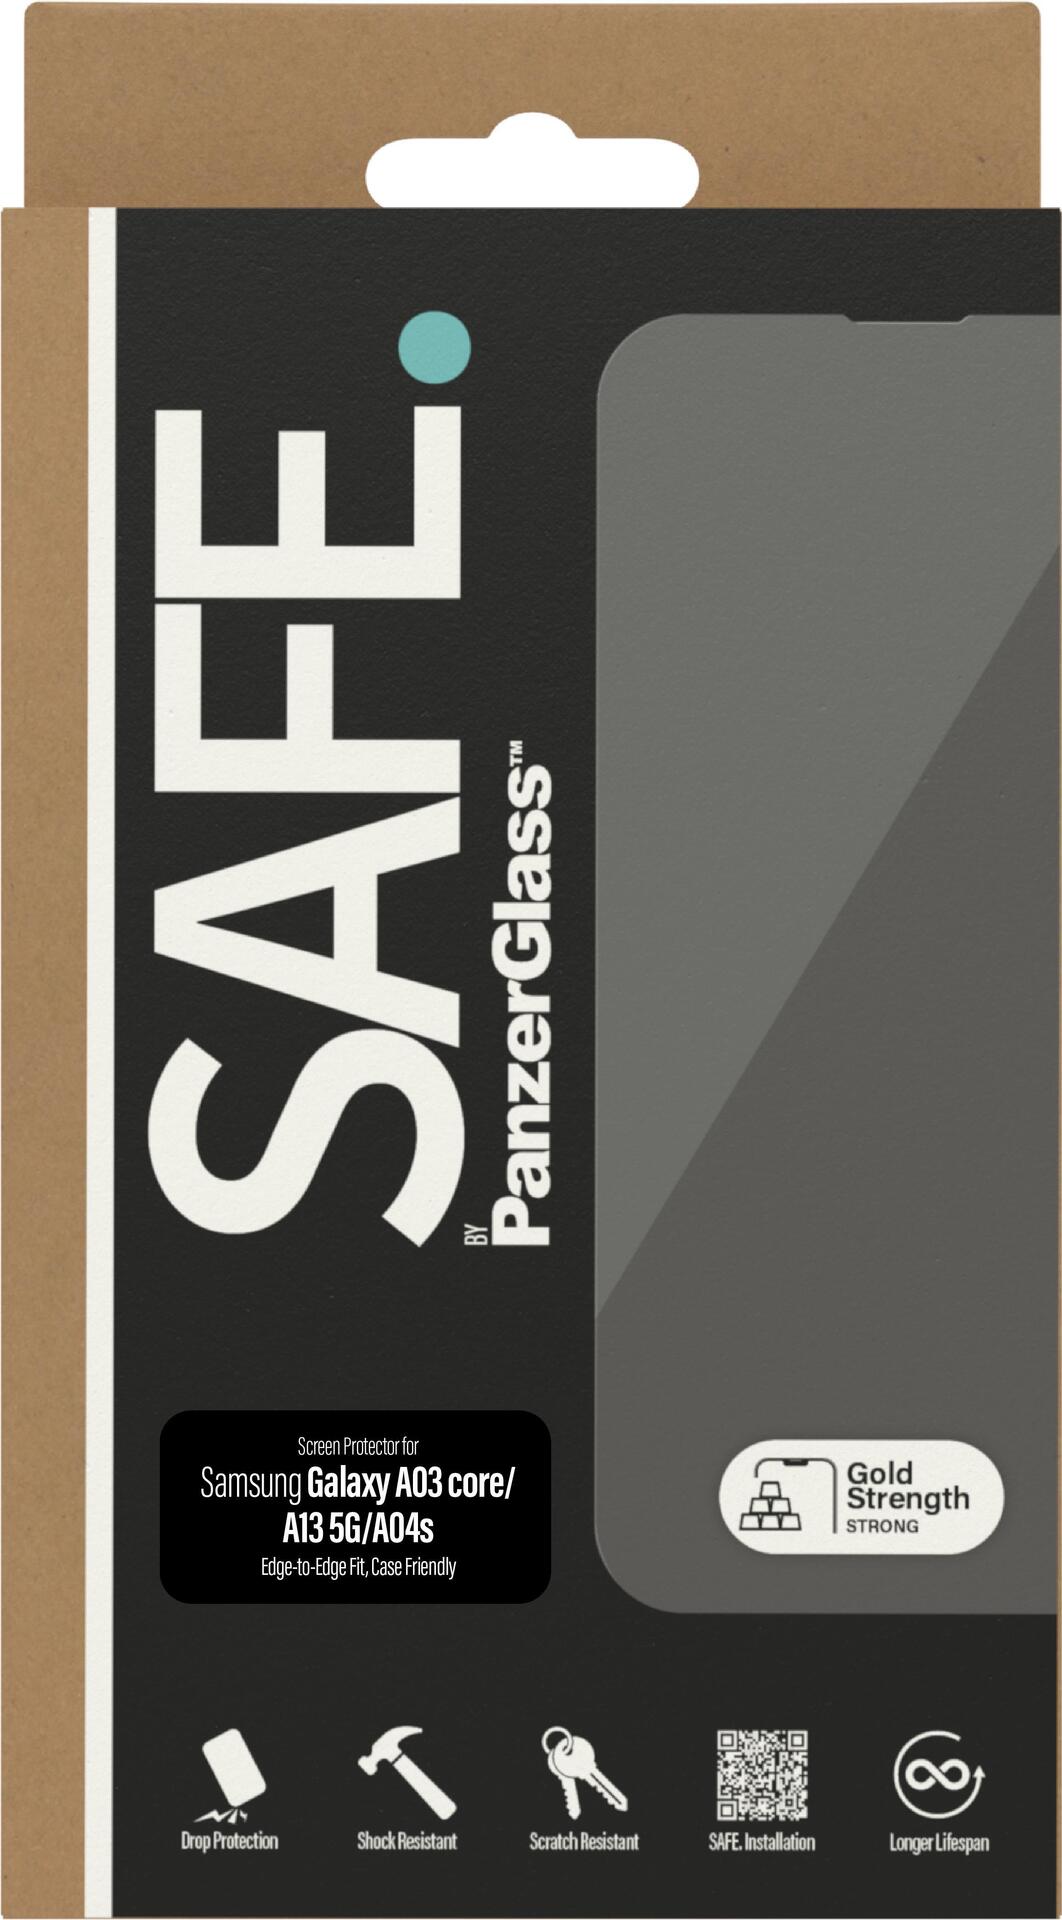 PanzerGlass SAFE. by  Samsung Galaxy A03 core – A13 5G – A04s – Displayschutzglas – Samsung – Samsung – Galaxy A03 core – Samsung – Galaxy A13 5G – Kratzresistent – Schockresistent – Transparent – 1 Stück(e) (SAFE95142)